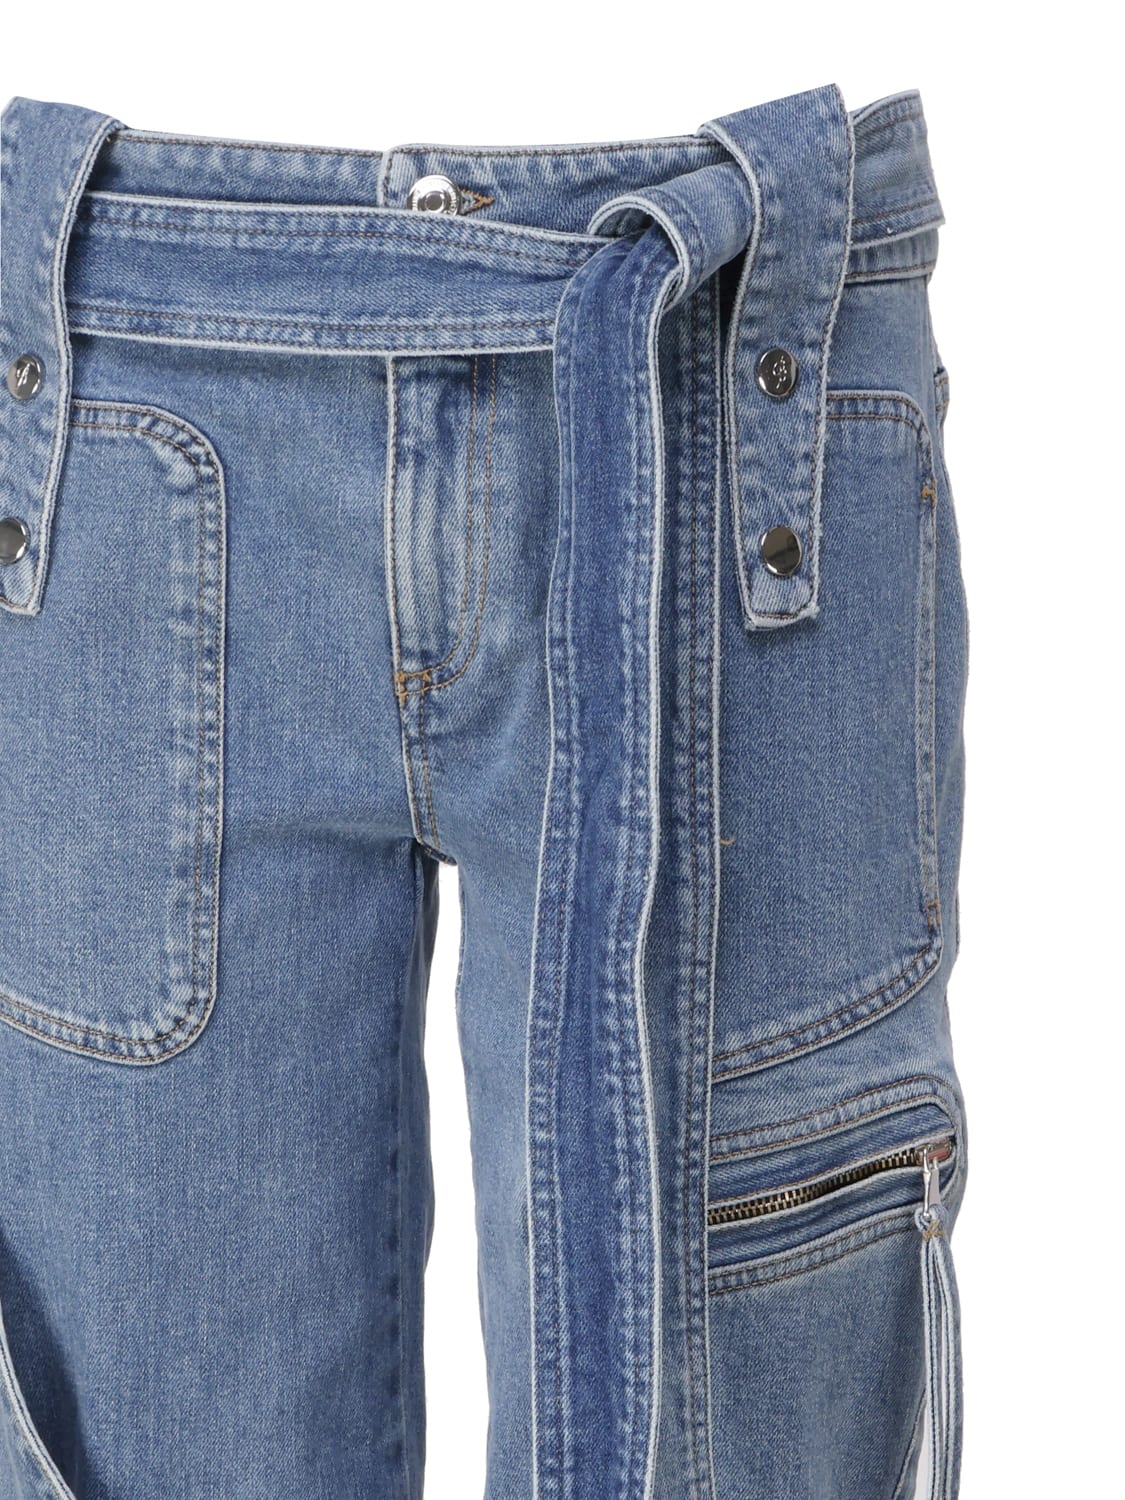 Shop Blumarine Cargo Jeasn With Belt In Medium Wash Jeans